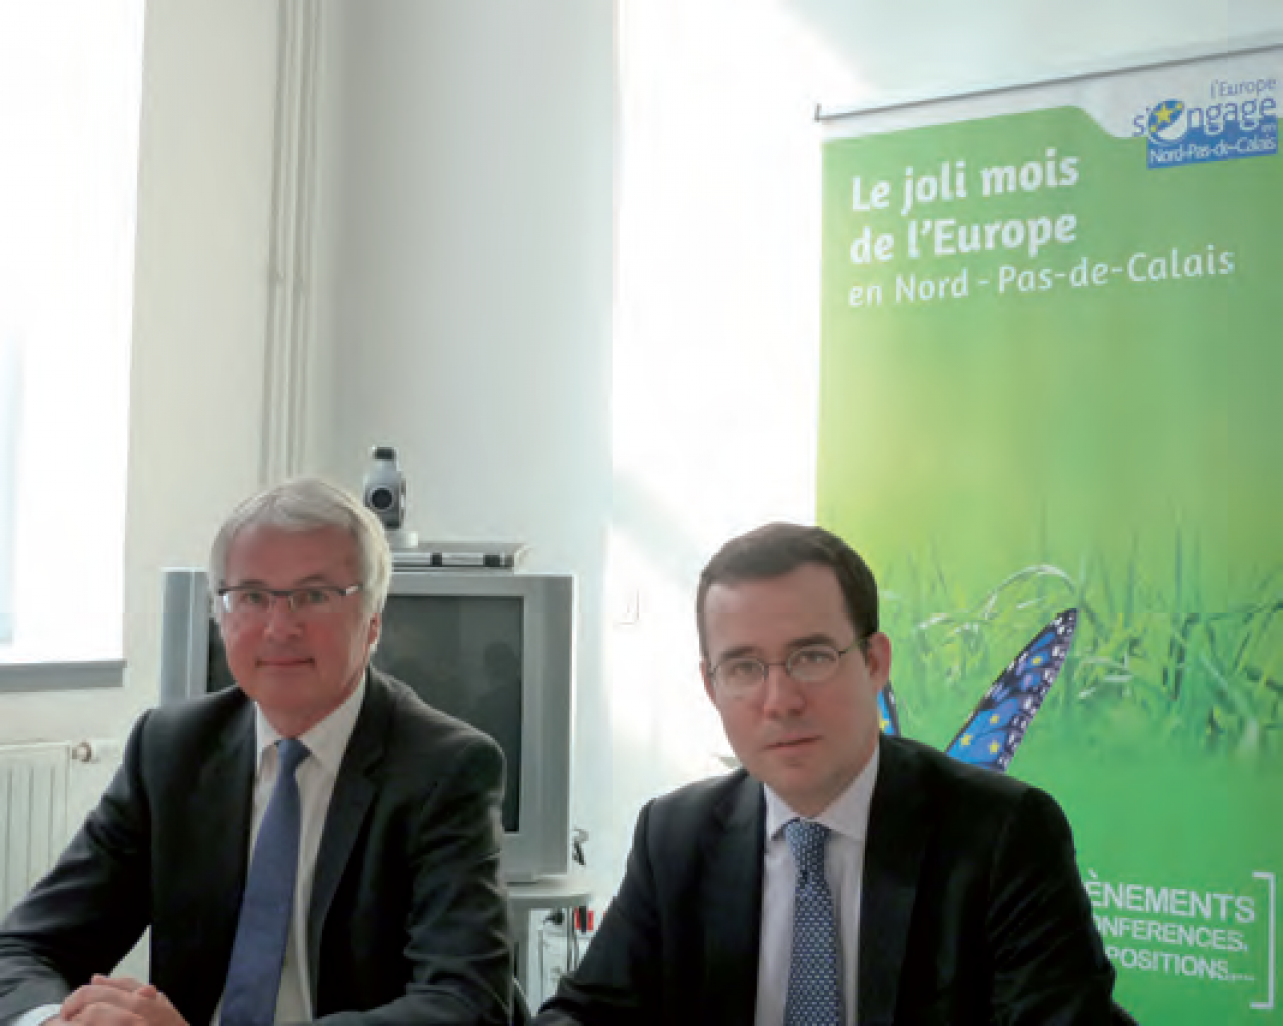 Rudy Eelgest et Laurent Hottiaux lors du lancement du “Joli mois de l’Europe en Nord-Pas-de-Calais“, le 3 mai 3013, à la préfecture de région.